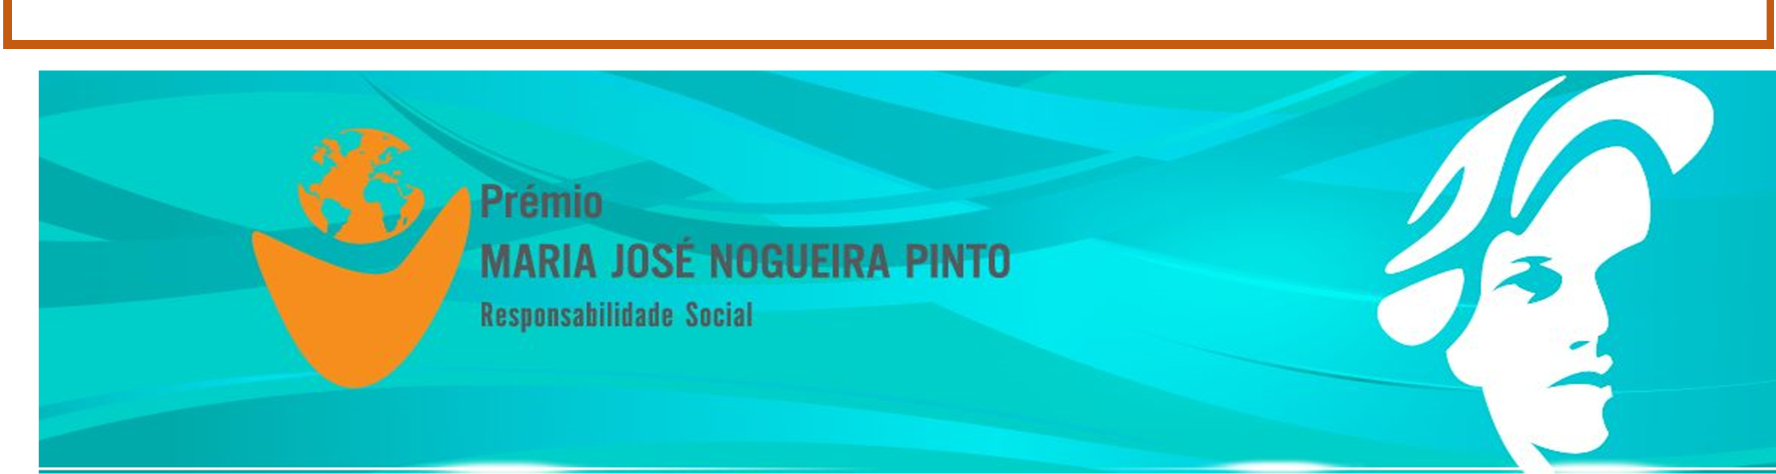 Encontra-se em curso o processo de candidatura à segunda edição do Prémio Maria José Nogueira Pinto em responsabilidade social, uma distinção instituída pela MSD em 2012, destinada a reconhecer o